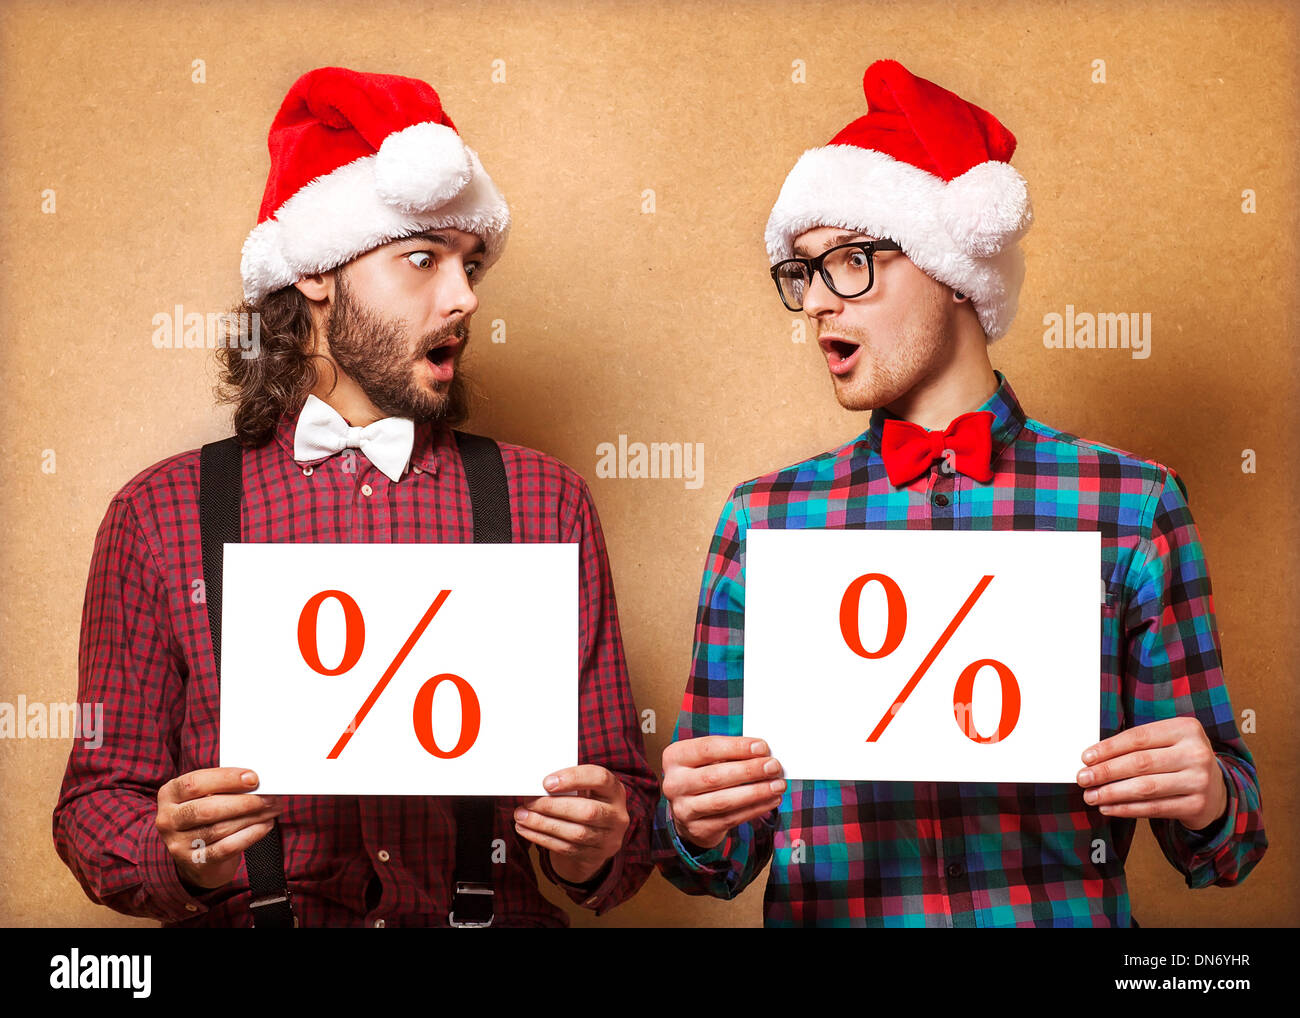 Natale, X-mas, persone, pubblicità, vendita concetto - happy due uomo in santa helper hat con vuoto scheda bianca. Hipster stile. Foto Stock